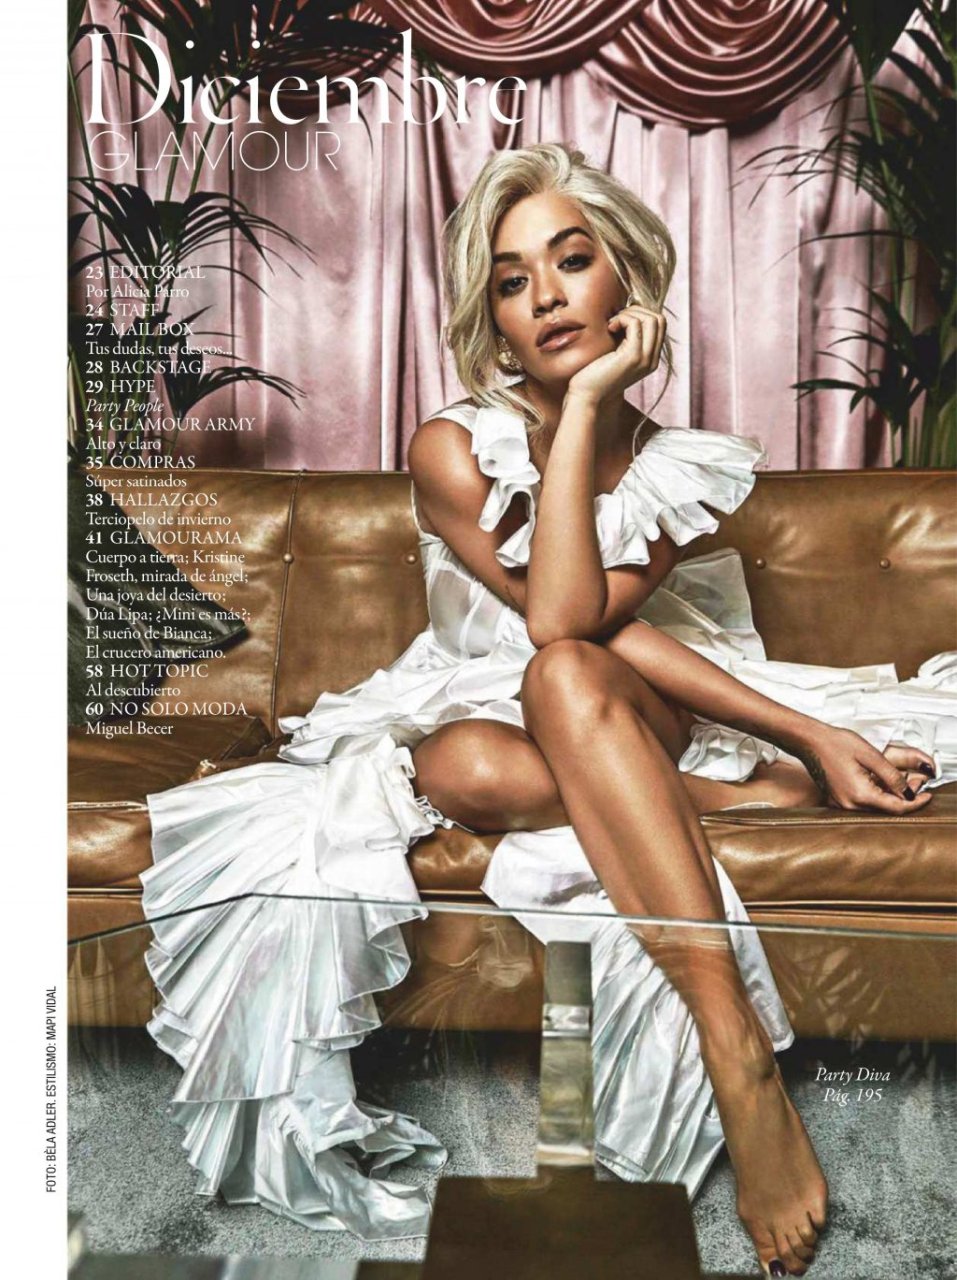 Rita Ora Sexy (8 Hot Photos)